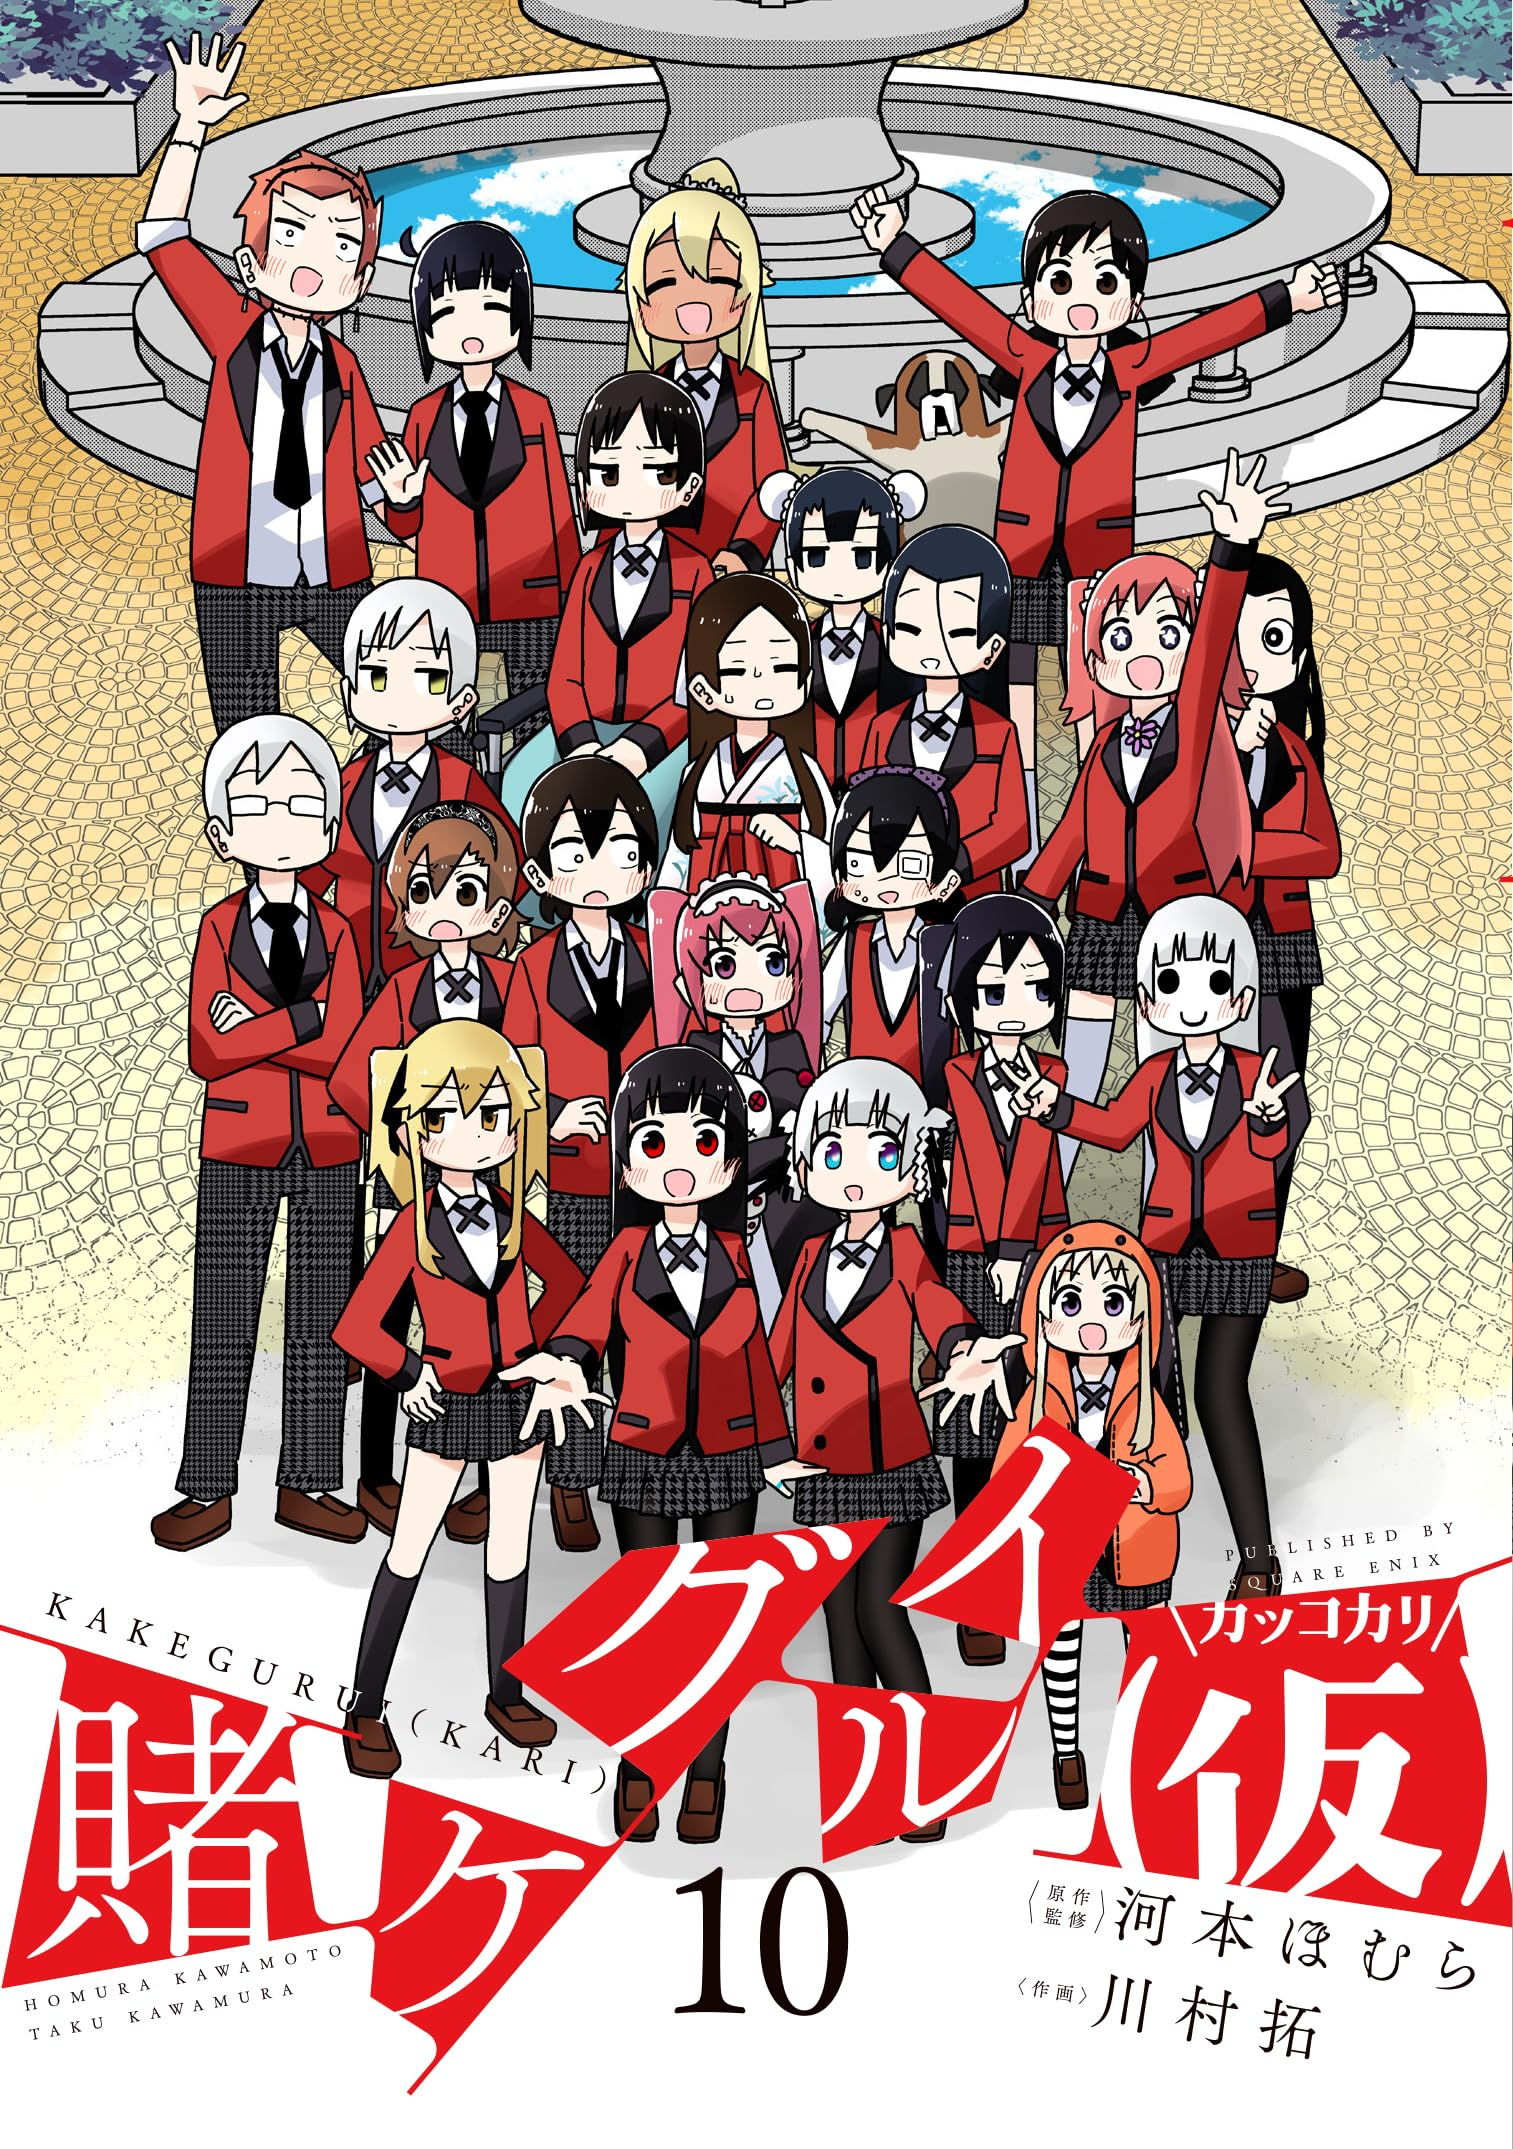 10 Manga Like Kakegurui Twin